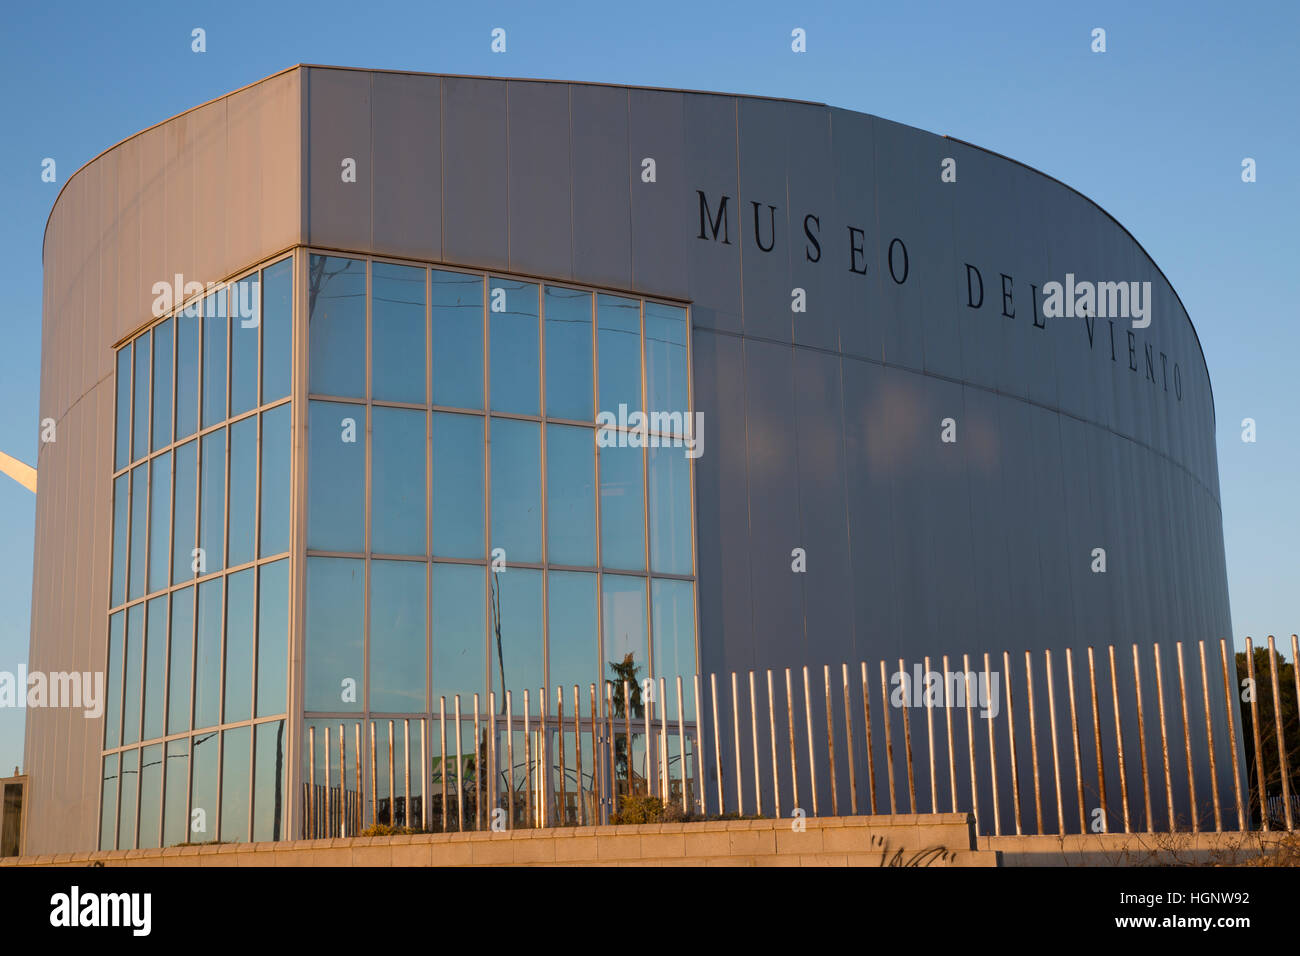 Wind Museum - Museo del Viento, La Muela, Aragon, Spain Stock Photo